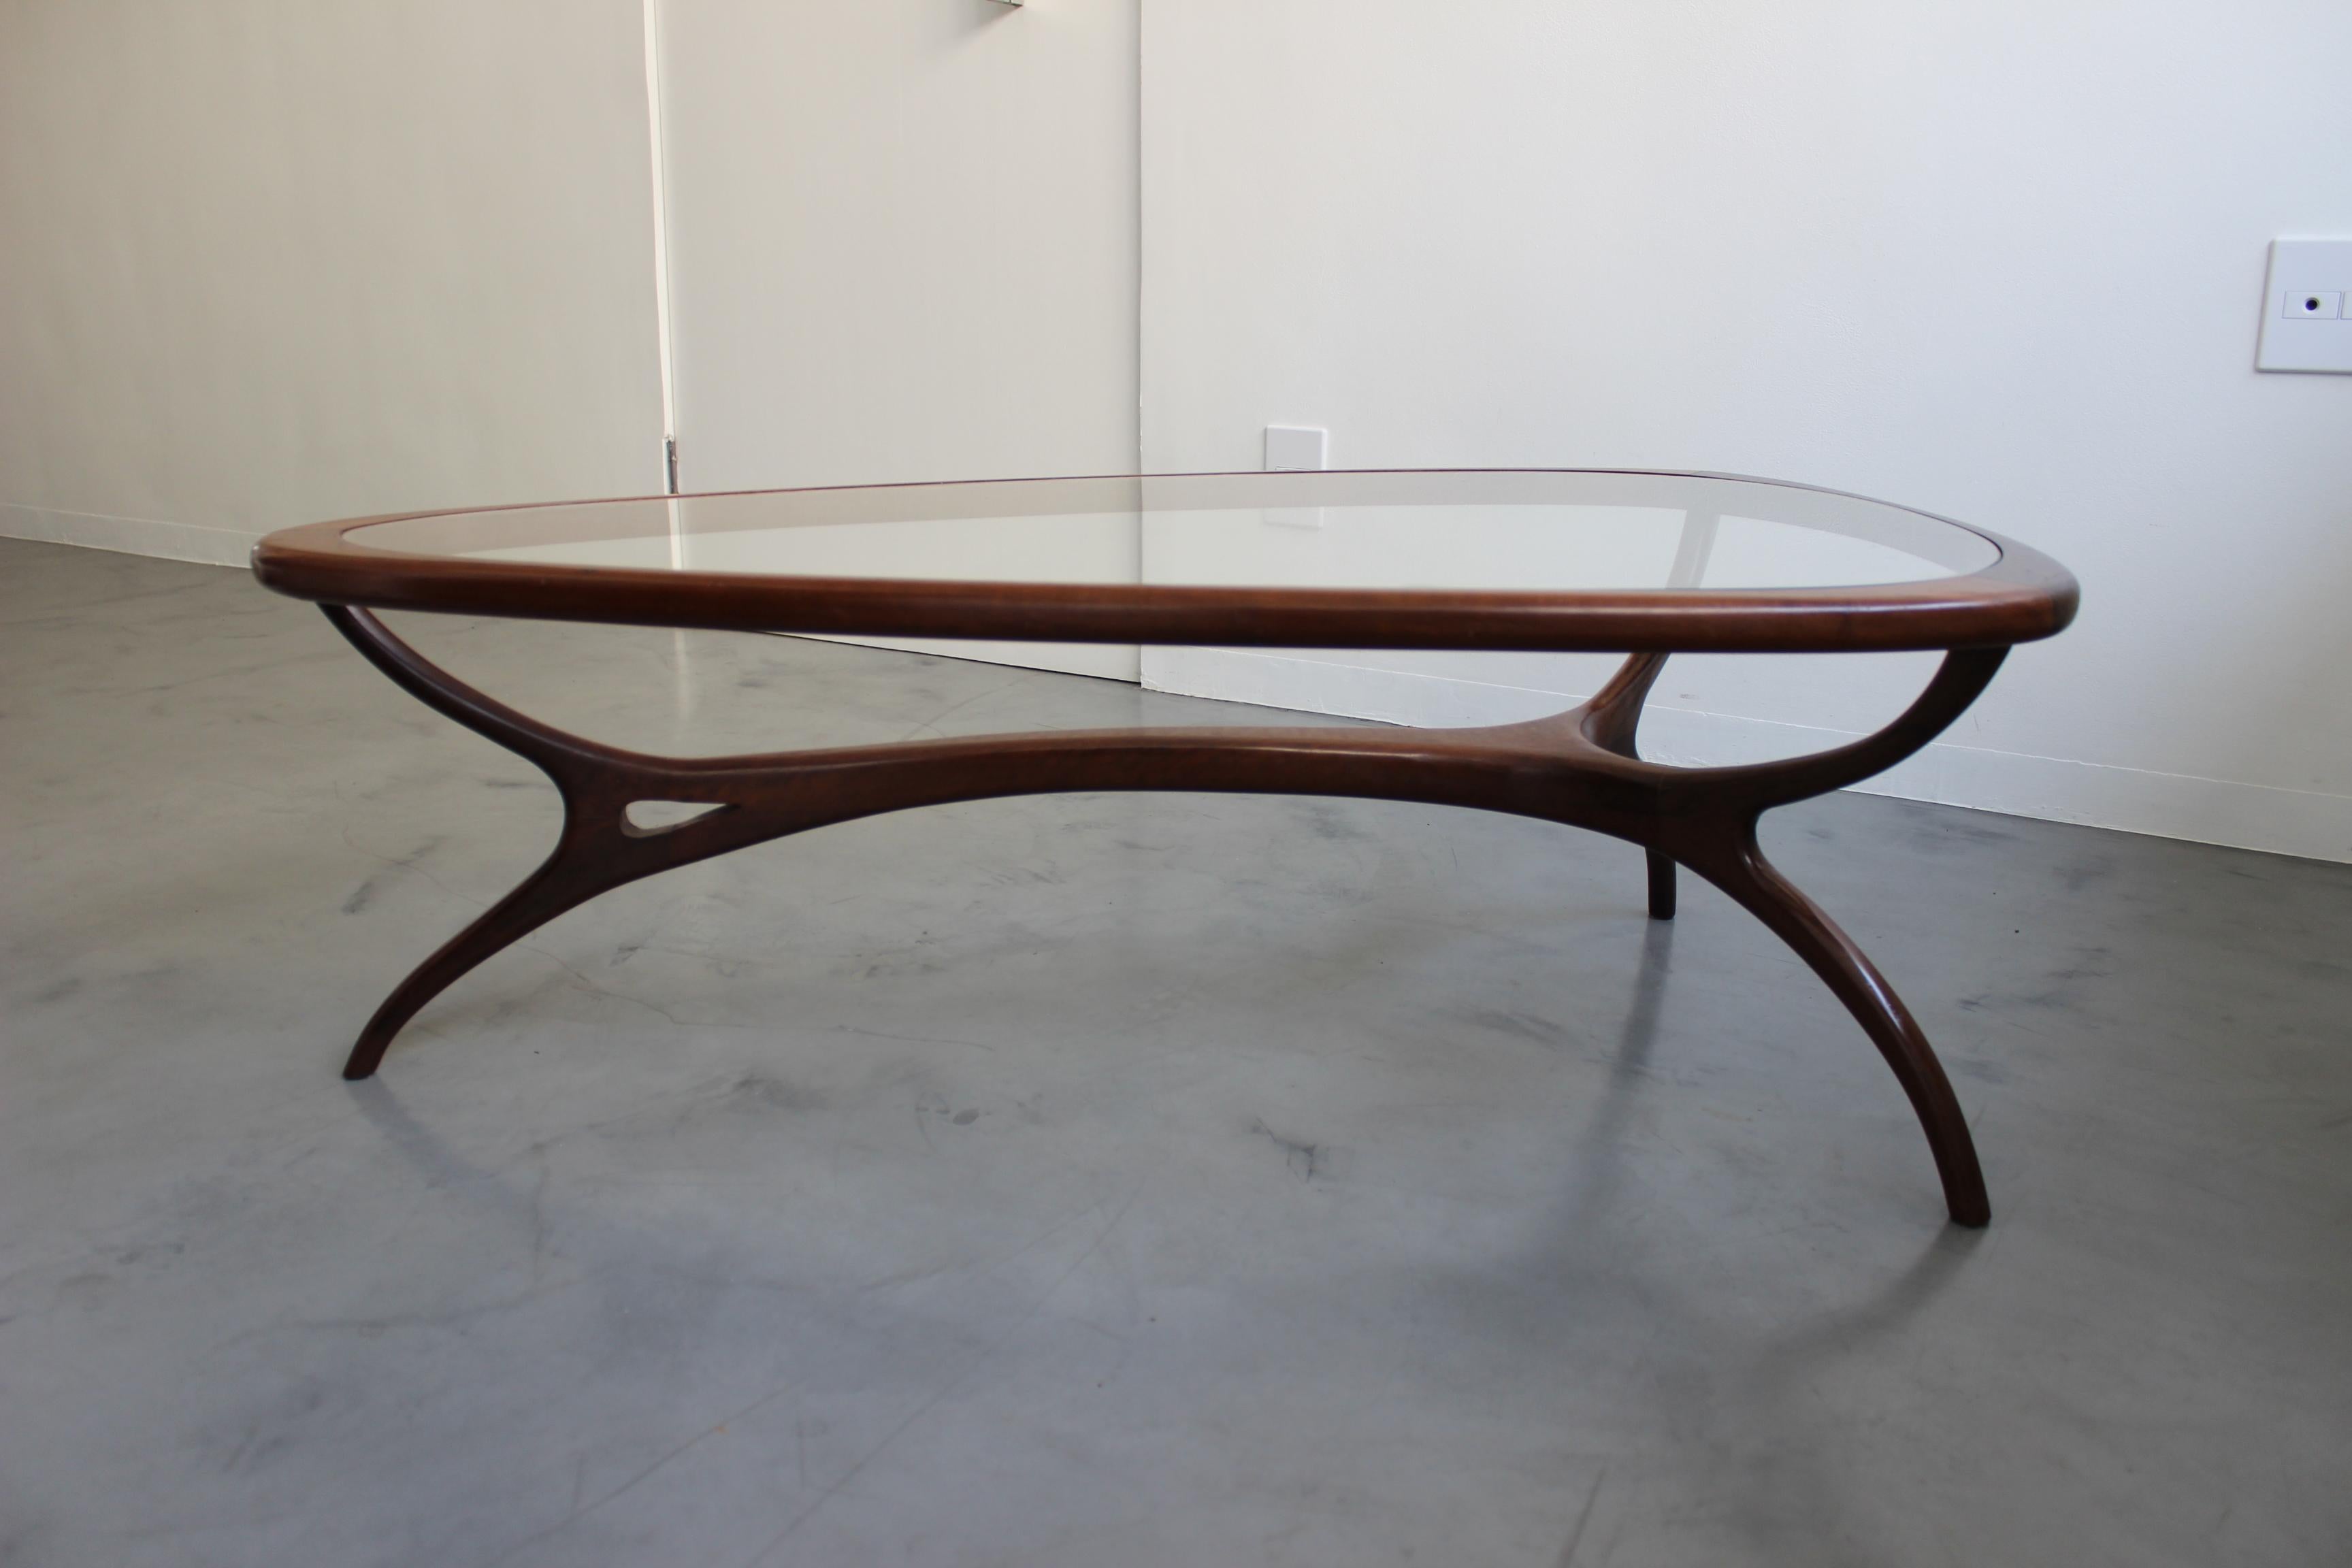 De belles courbes sensuelles en bois et en verre produisent une table basse sculpturale du maître de la modernité italo-brésilienne Giuseppe Scapinelli